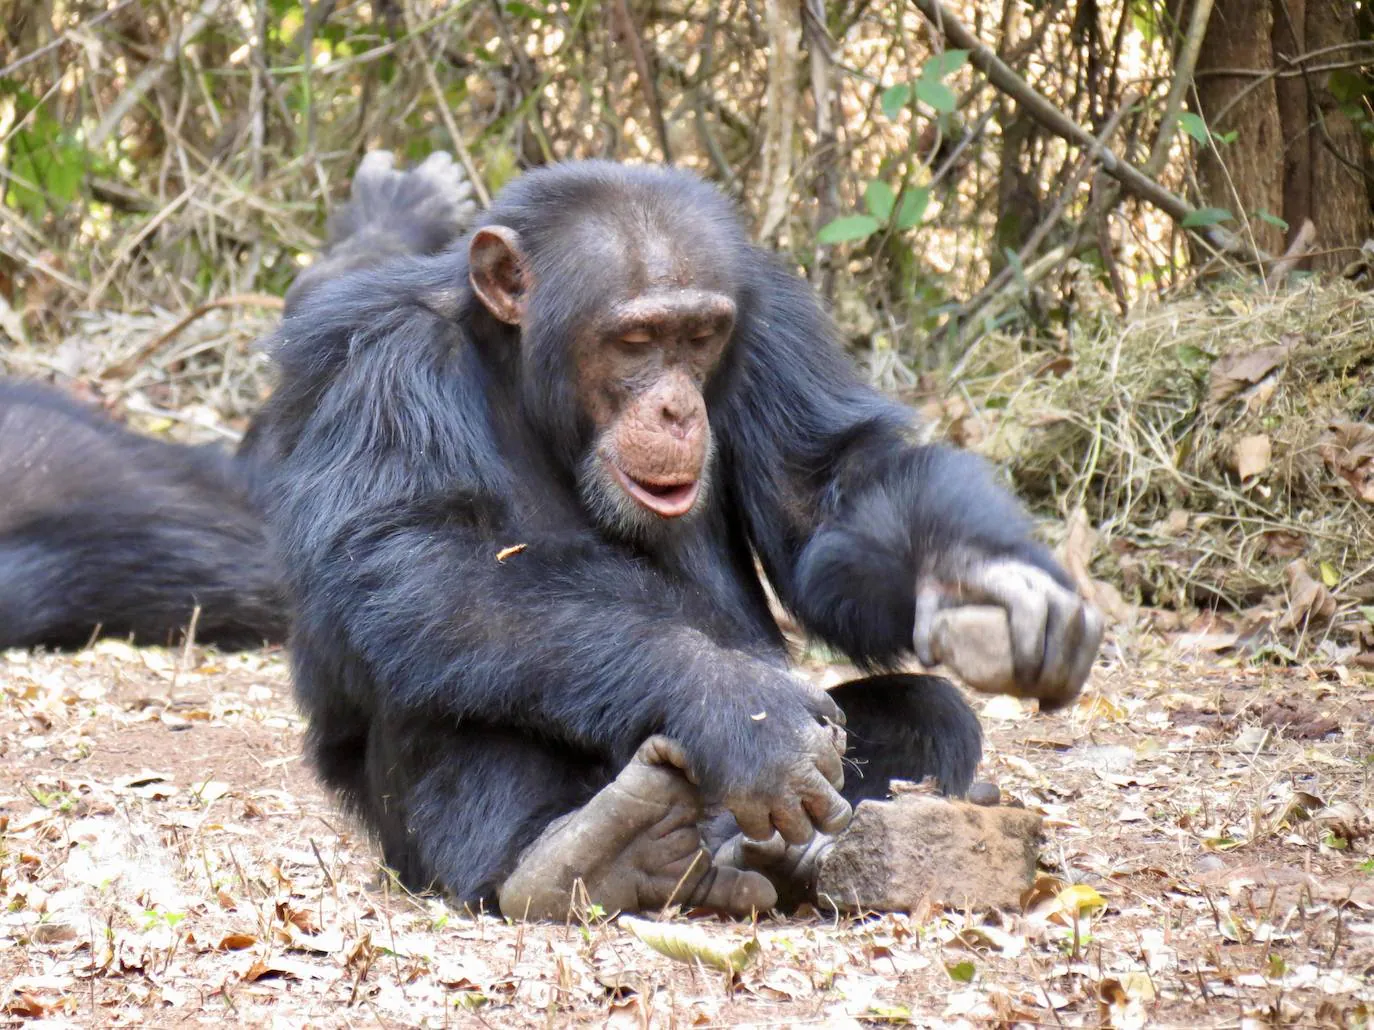 Los chimpancés podrían aprender el uso de herramientas socialmente